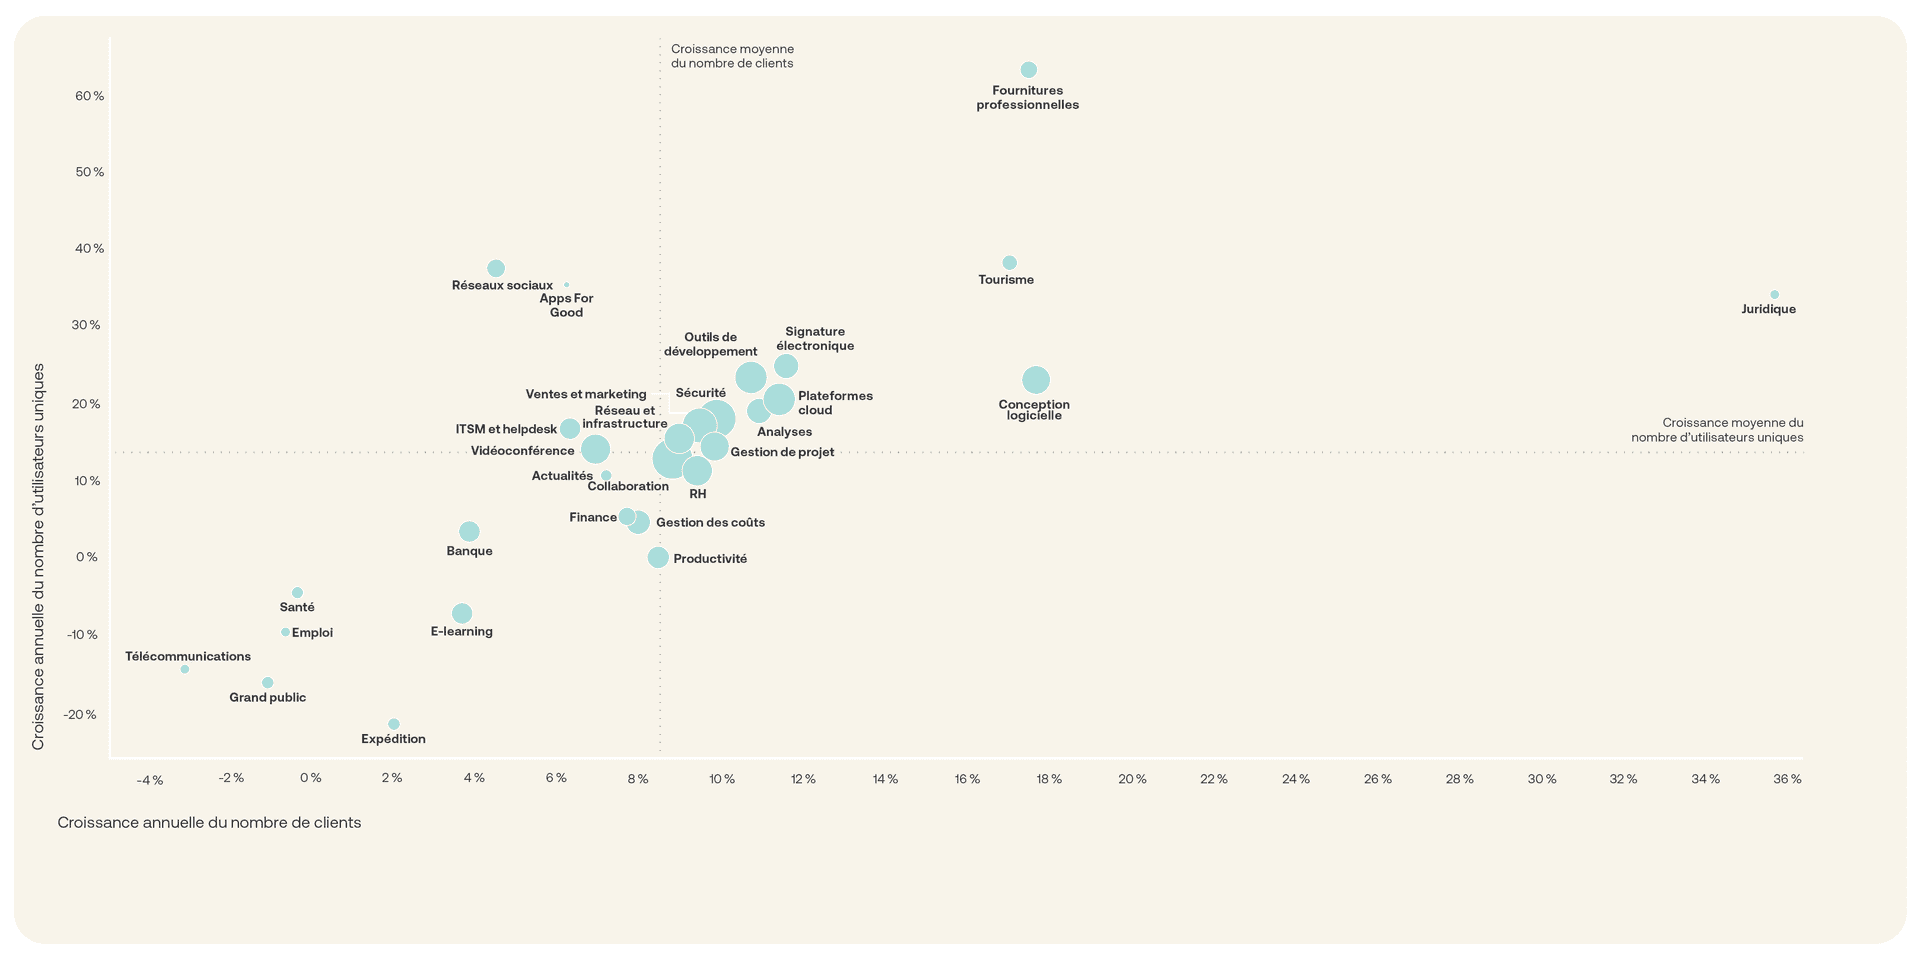 Graphique affichant la croissance annuelle des catégories d’applications.